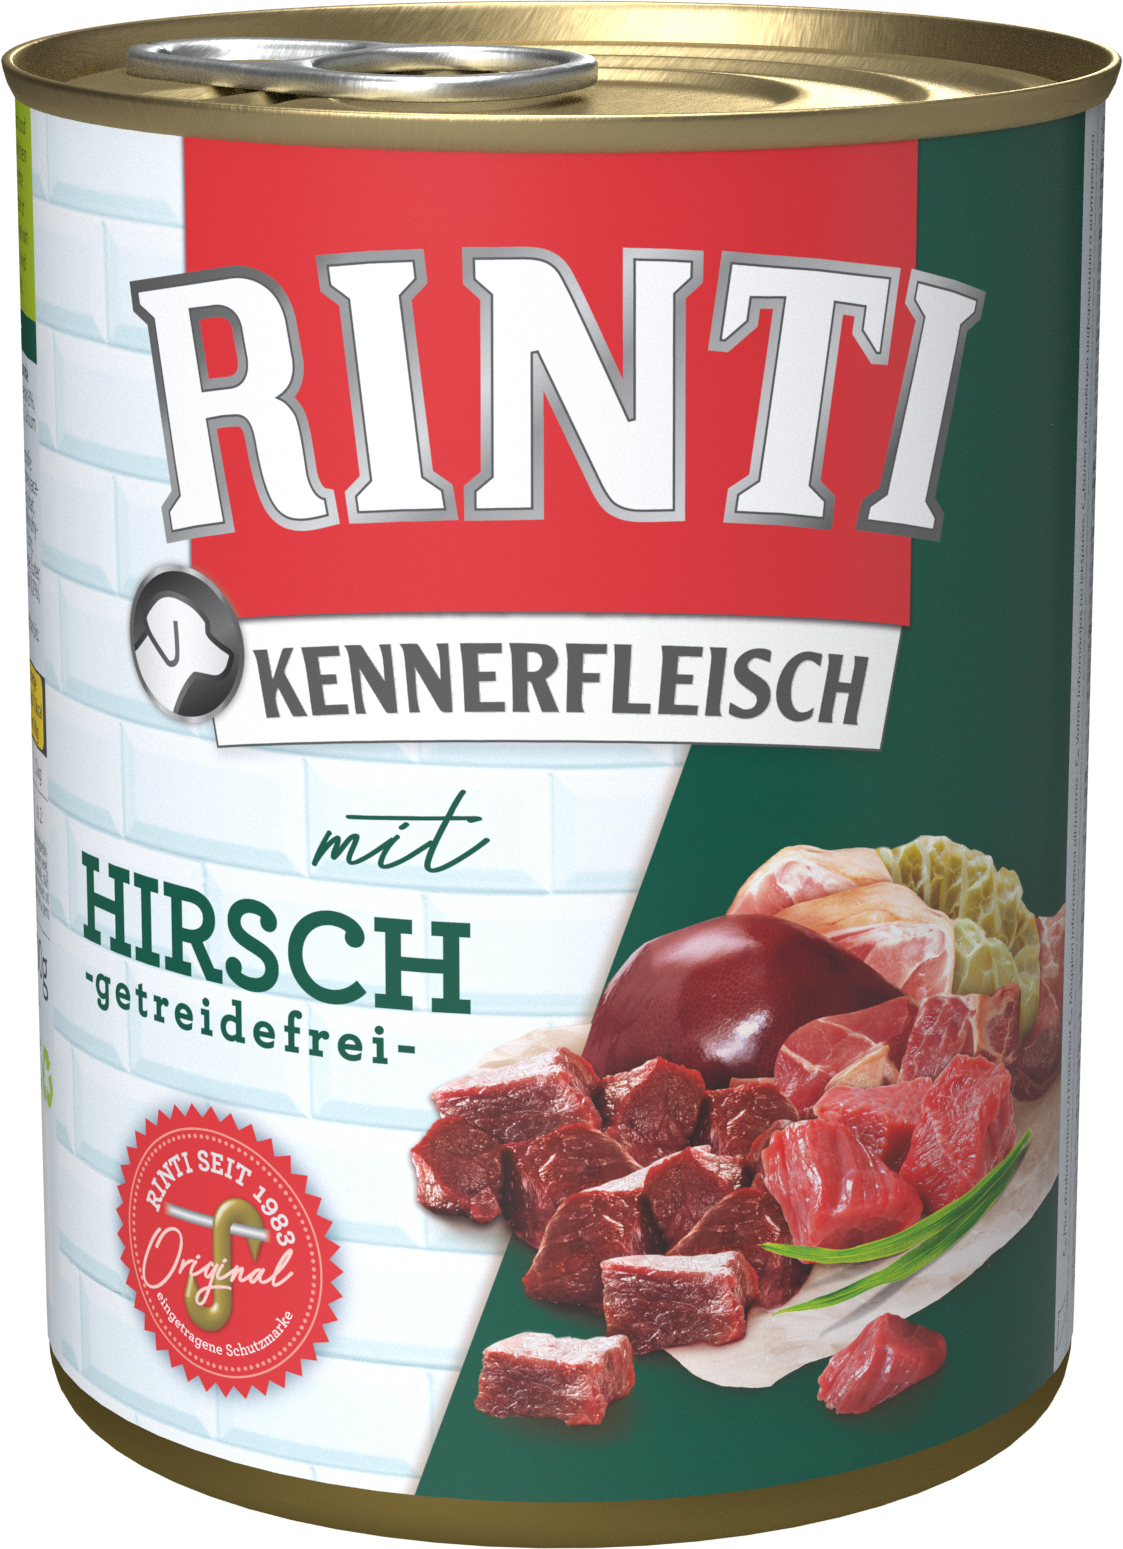 RINTI Kennerfleisch Hirsch 800g